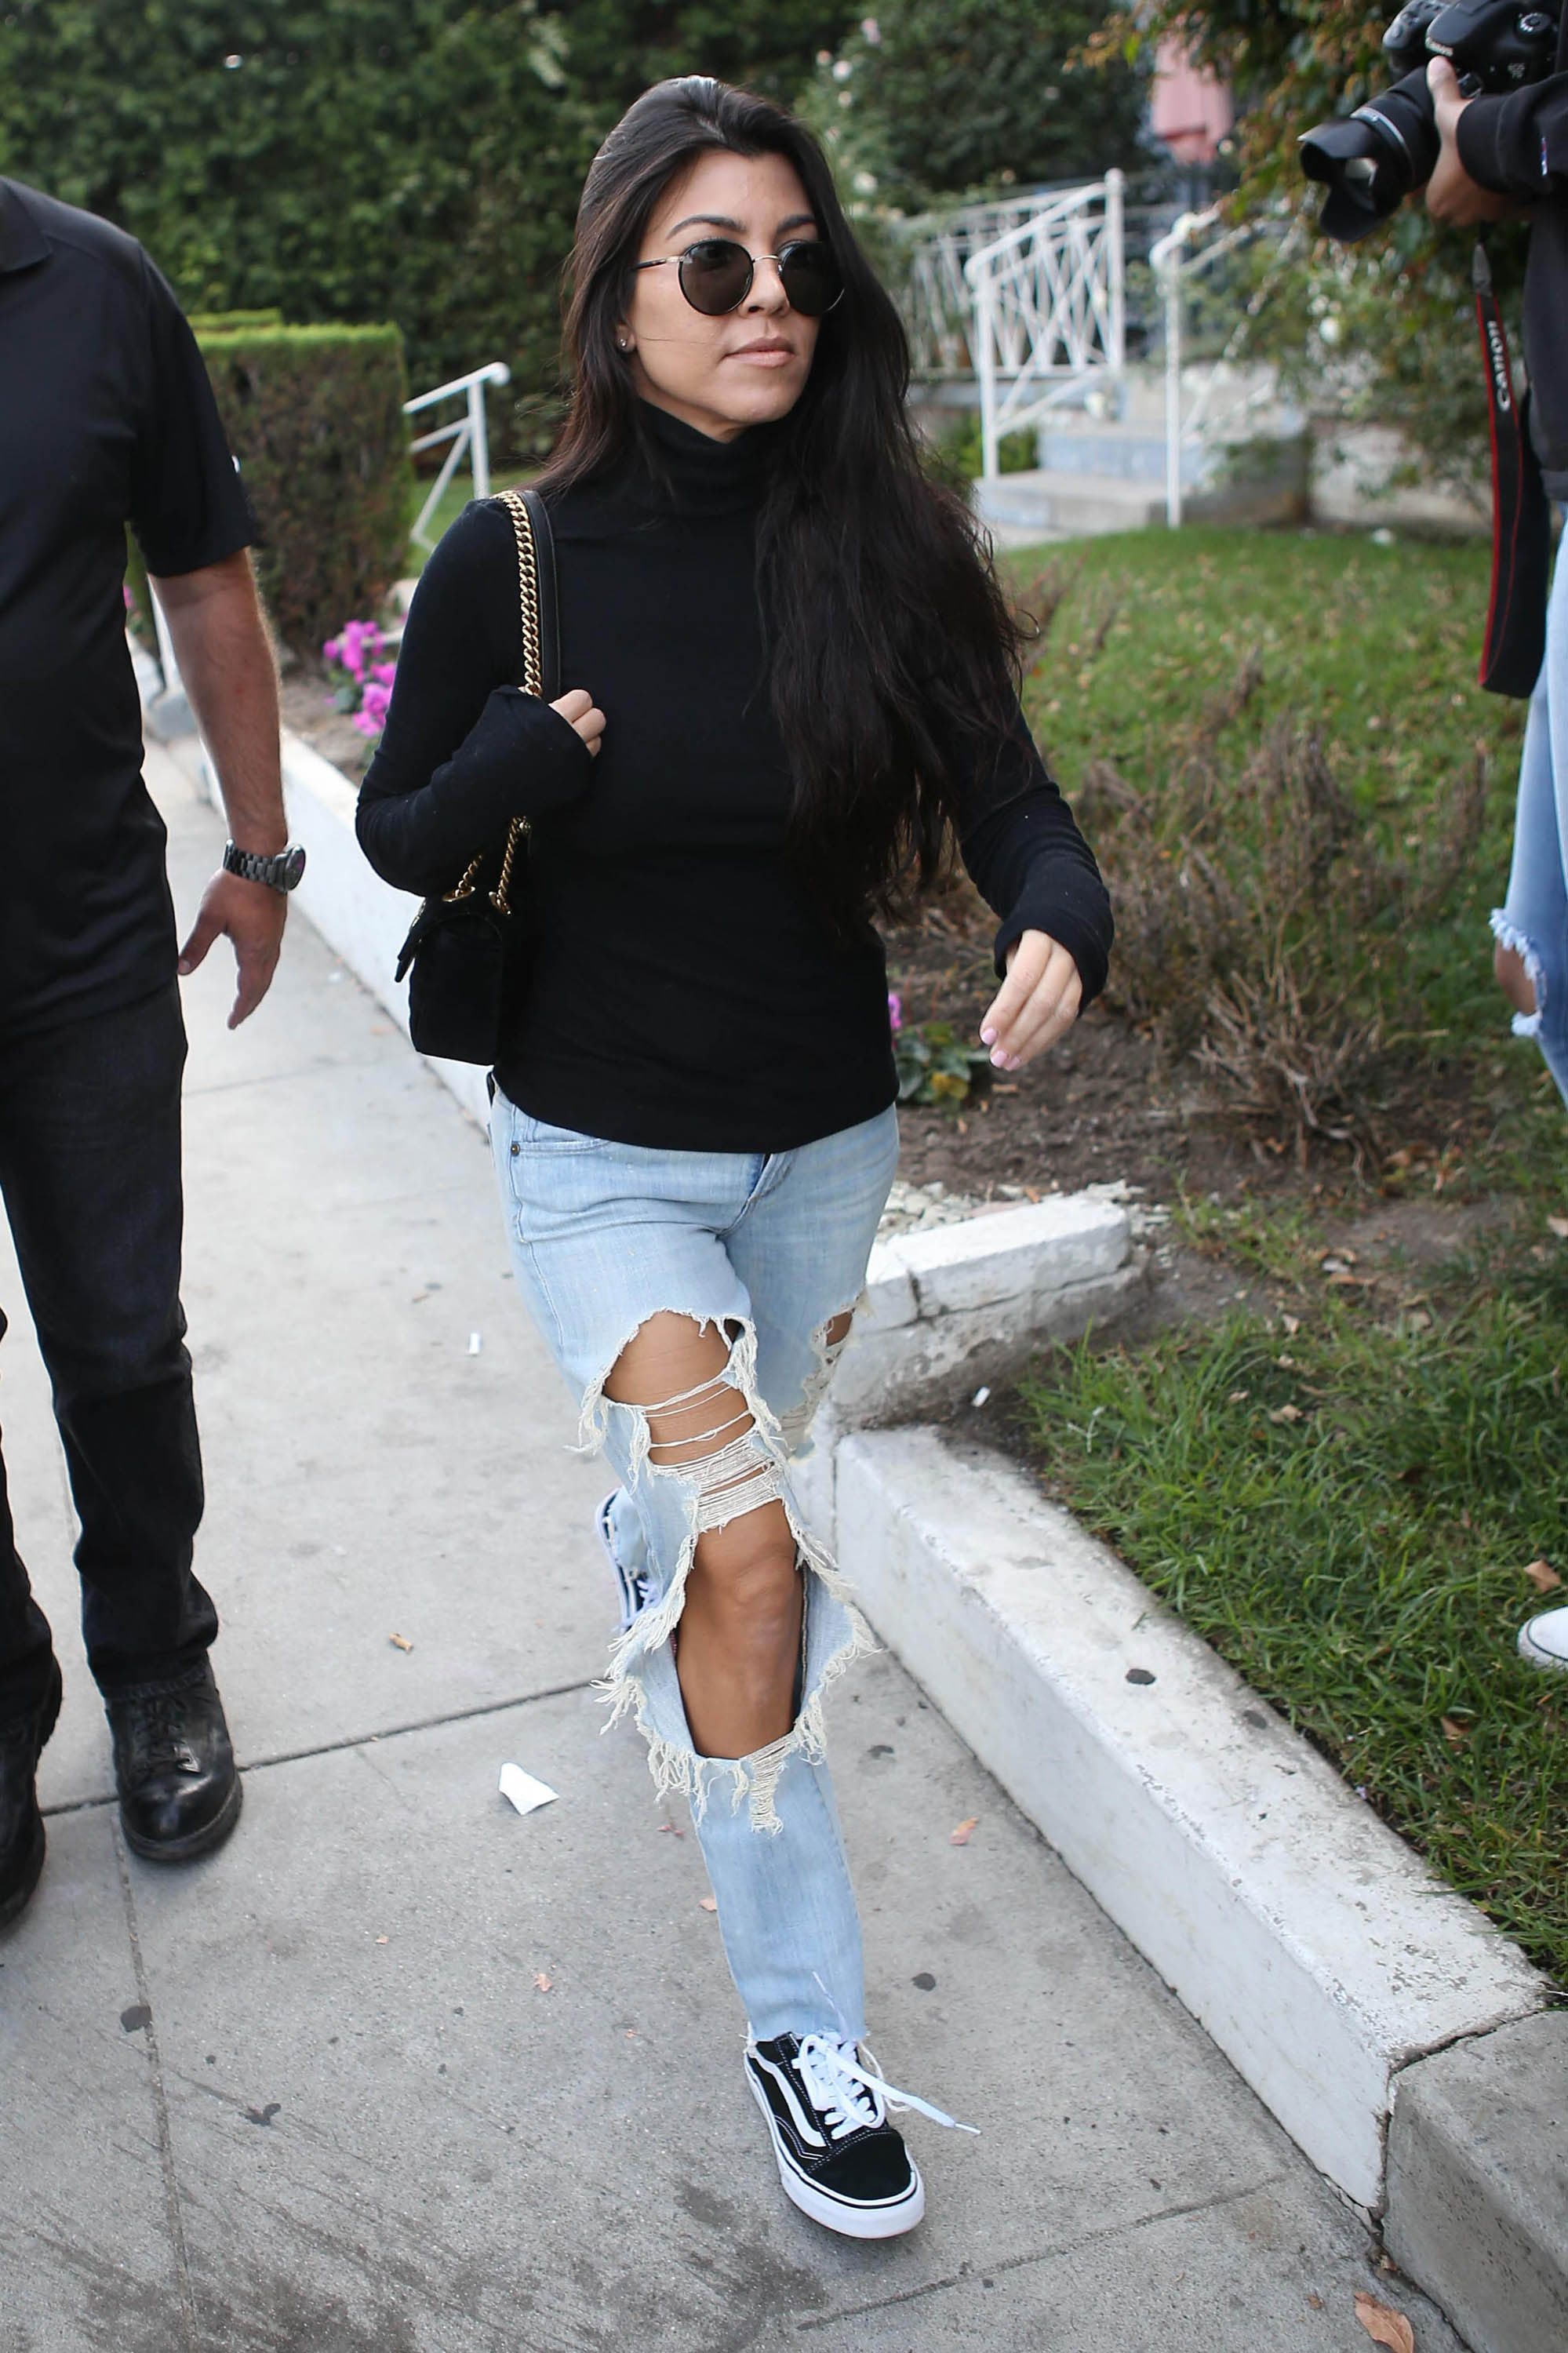 etc Tilgængelig Framework Kourtney Kardashian's Turtleneck, Destroyed Jeans and Sneakers Look for  Less - The Budget Babe | Affordable Fashion & Style Blog